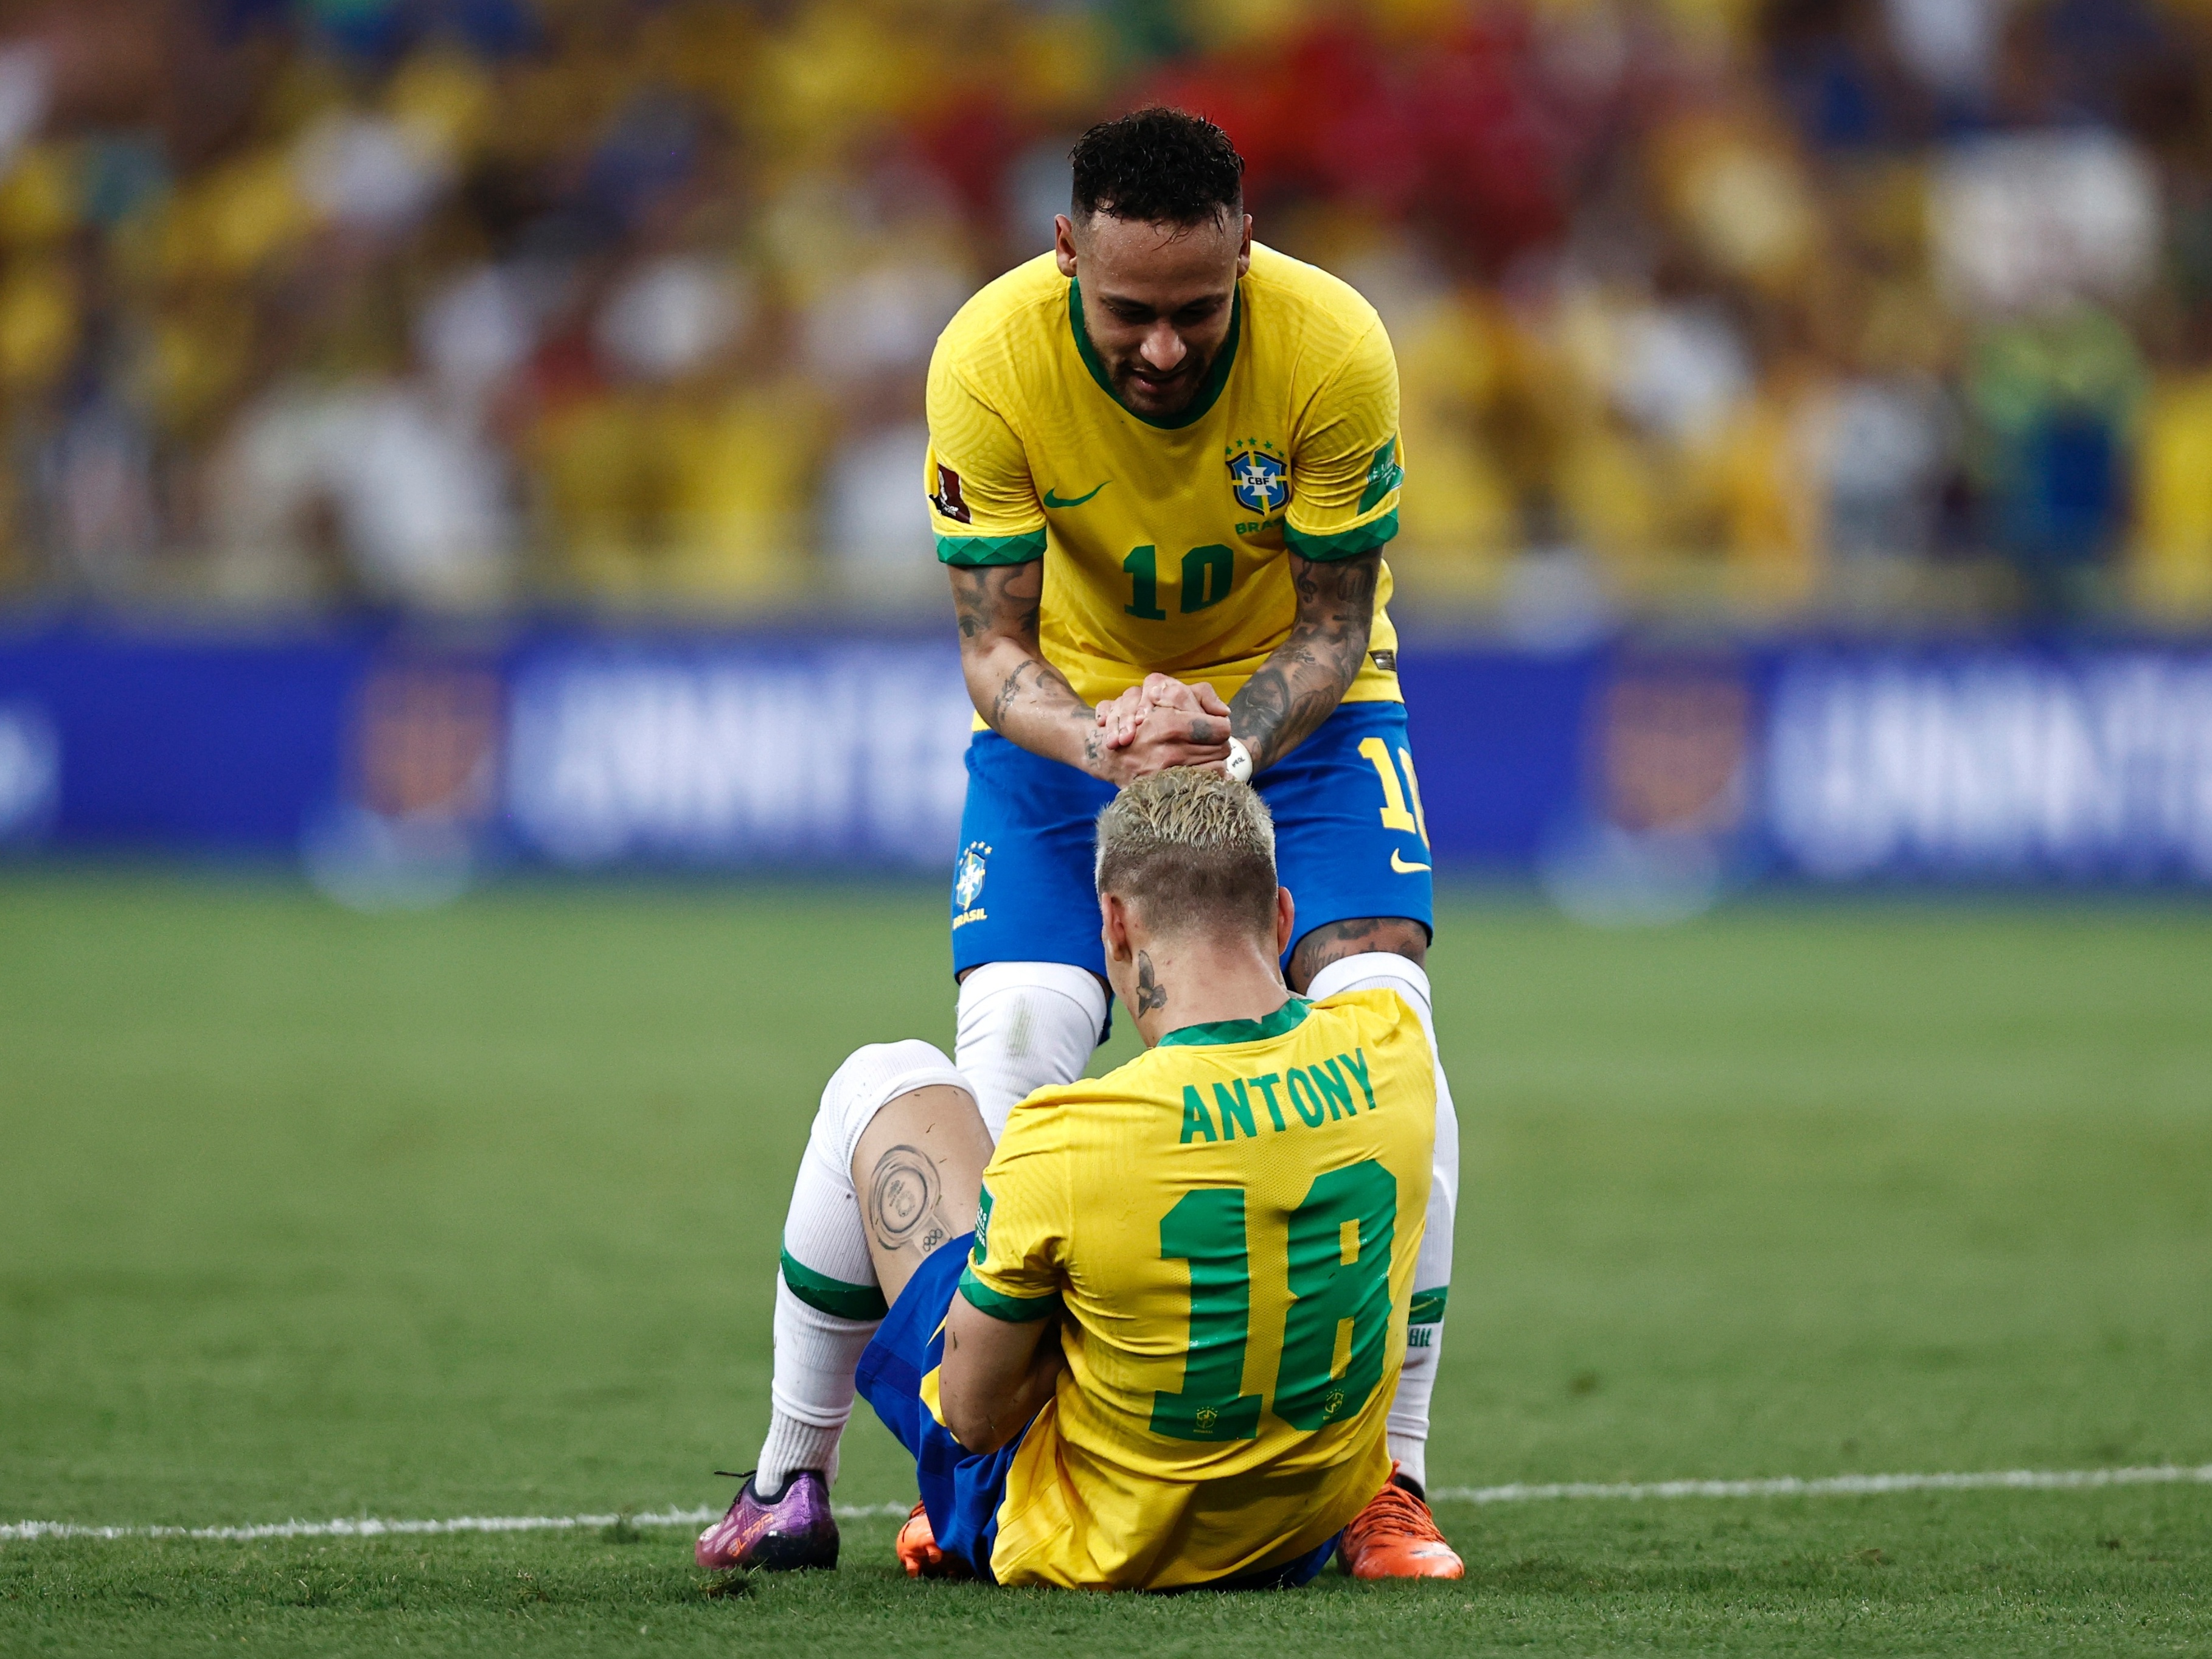 Seleção: Antony impressiona Neymar e vira pupilo do camisa 10